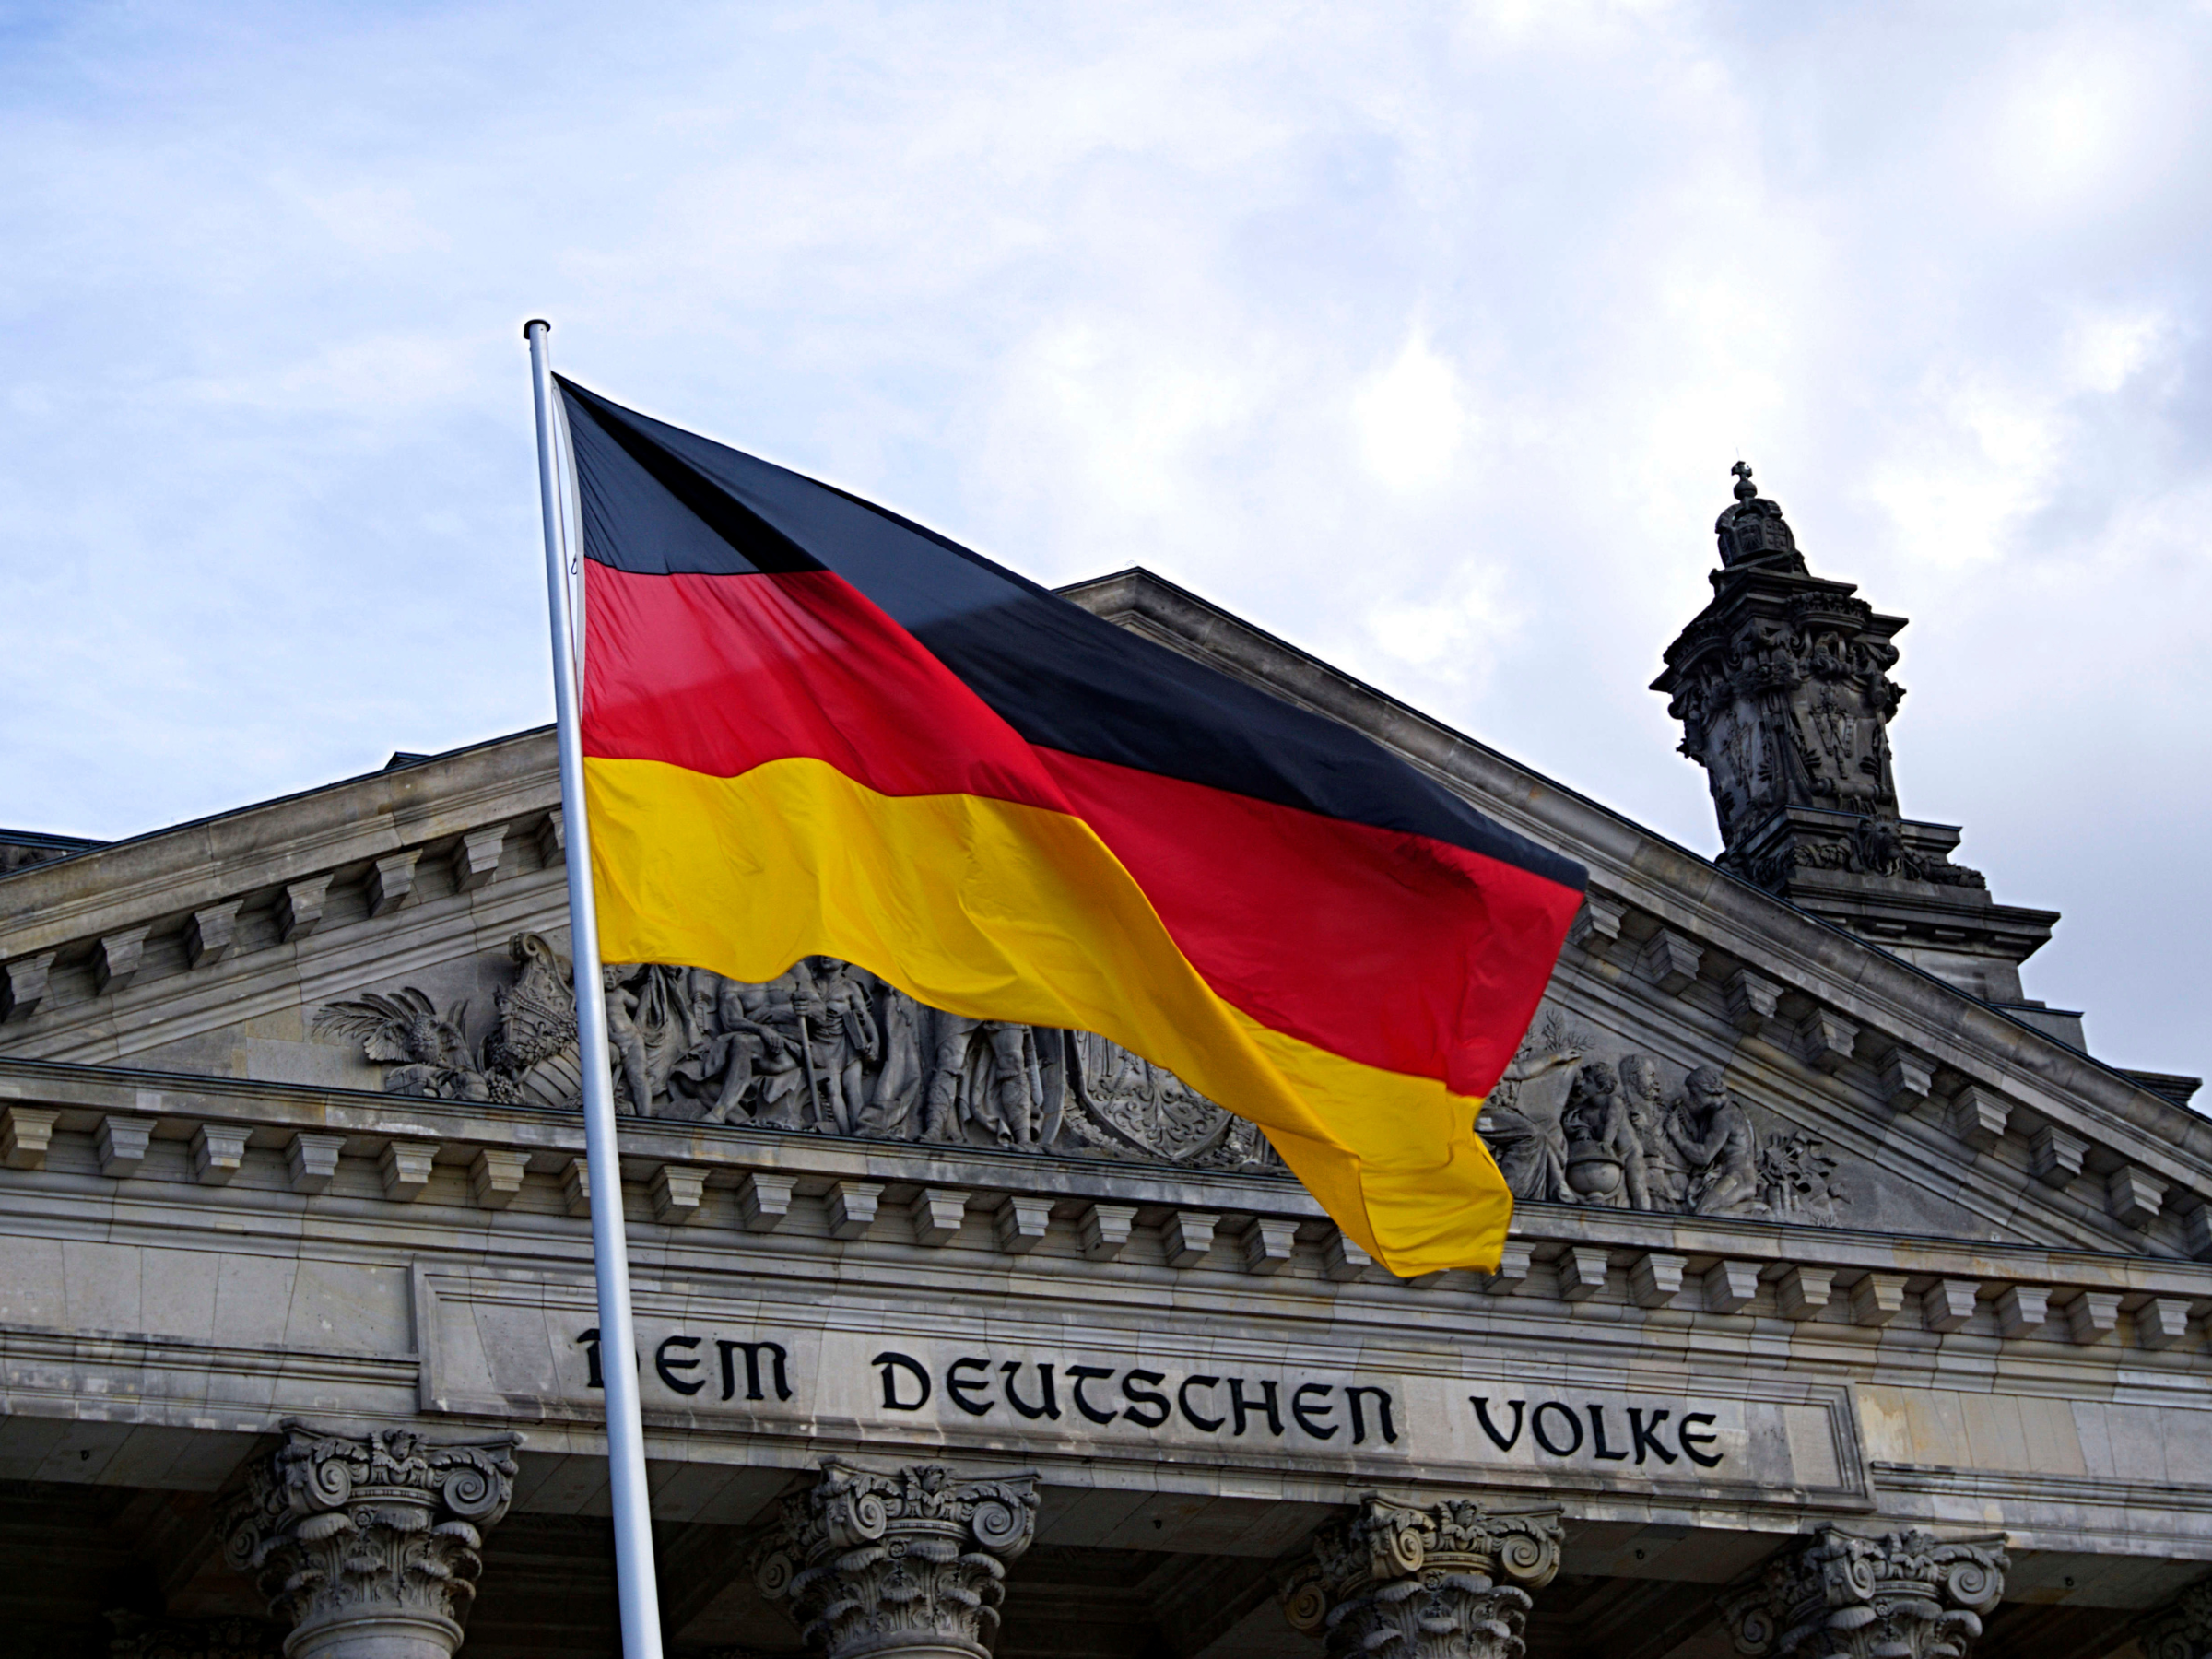 Cờ Đức và cở Bỉ khác nhau như thế nào?